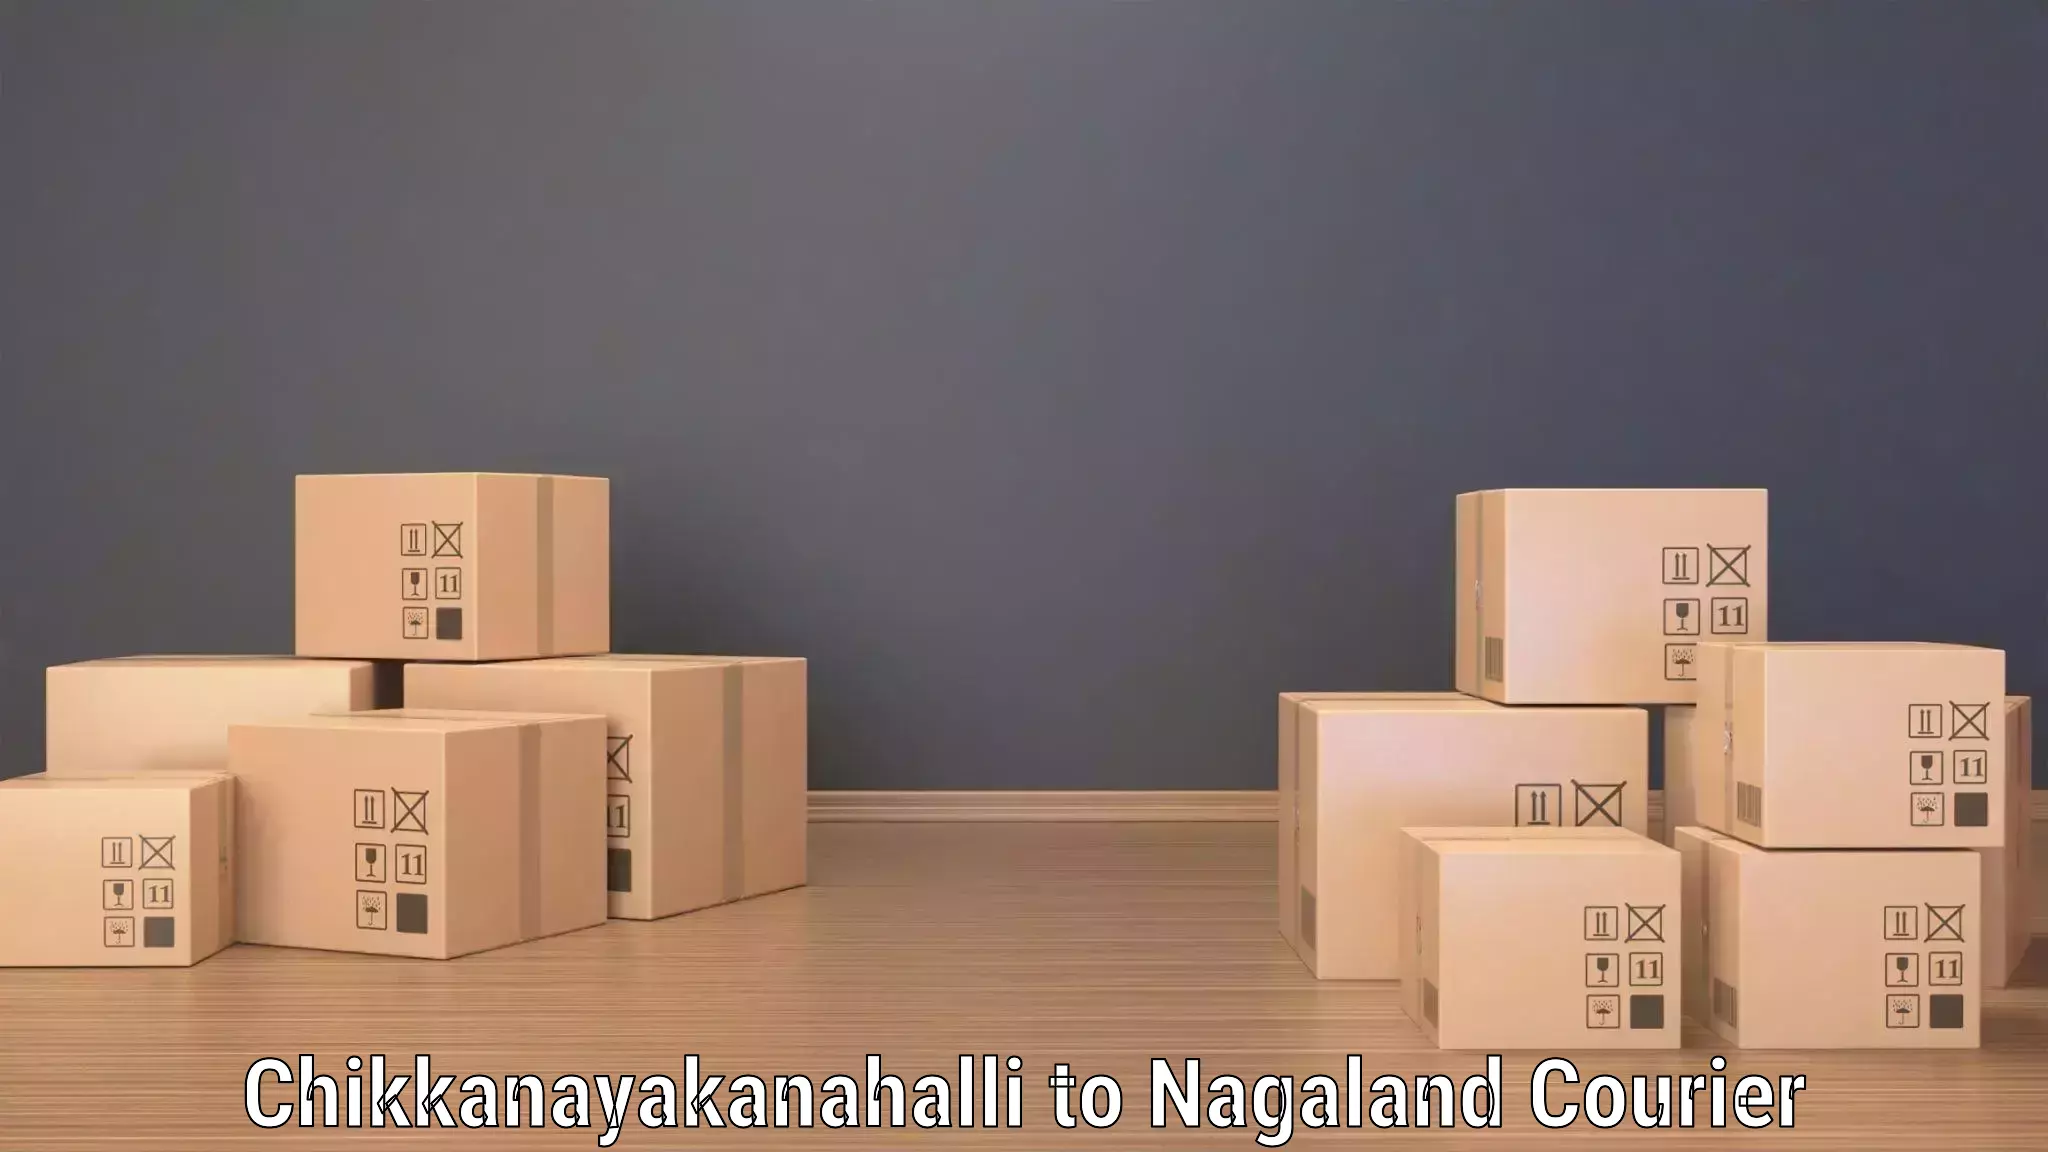 Urban courier service Chikkanayakanahalli to Wokha